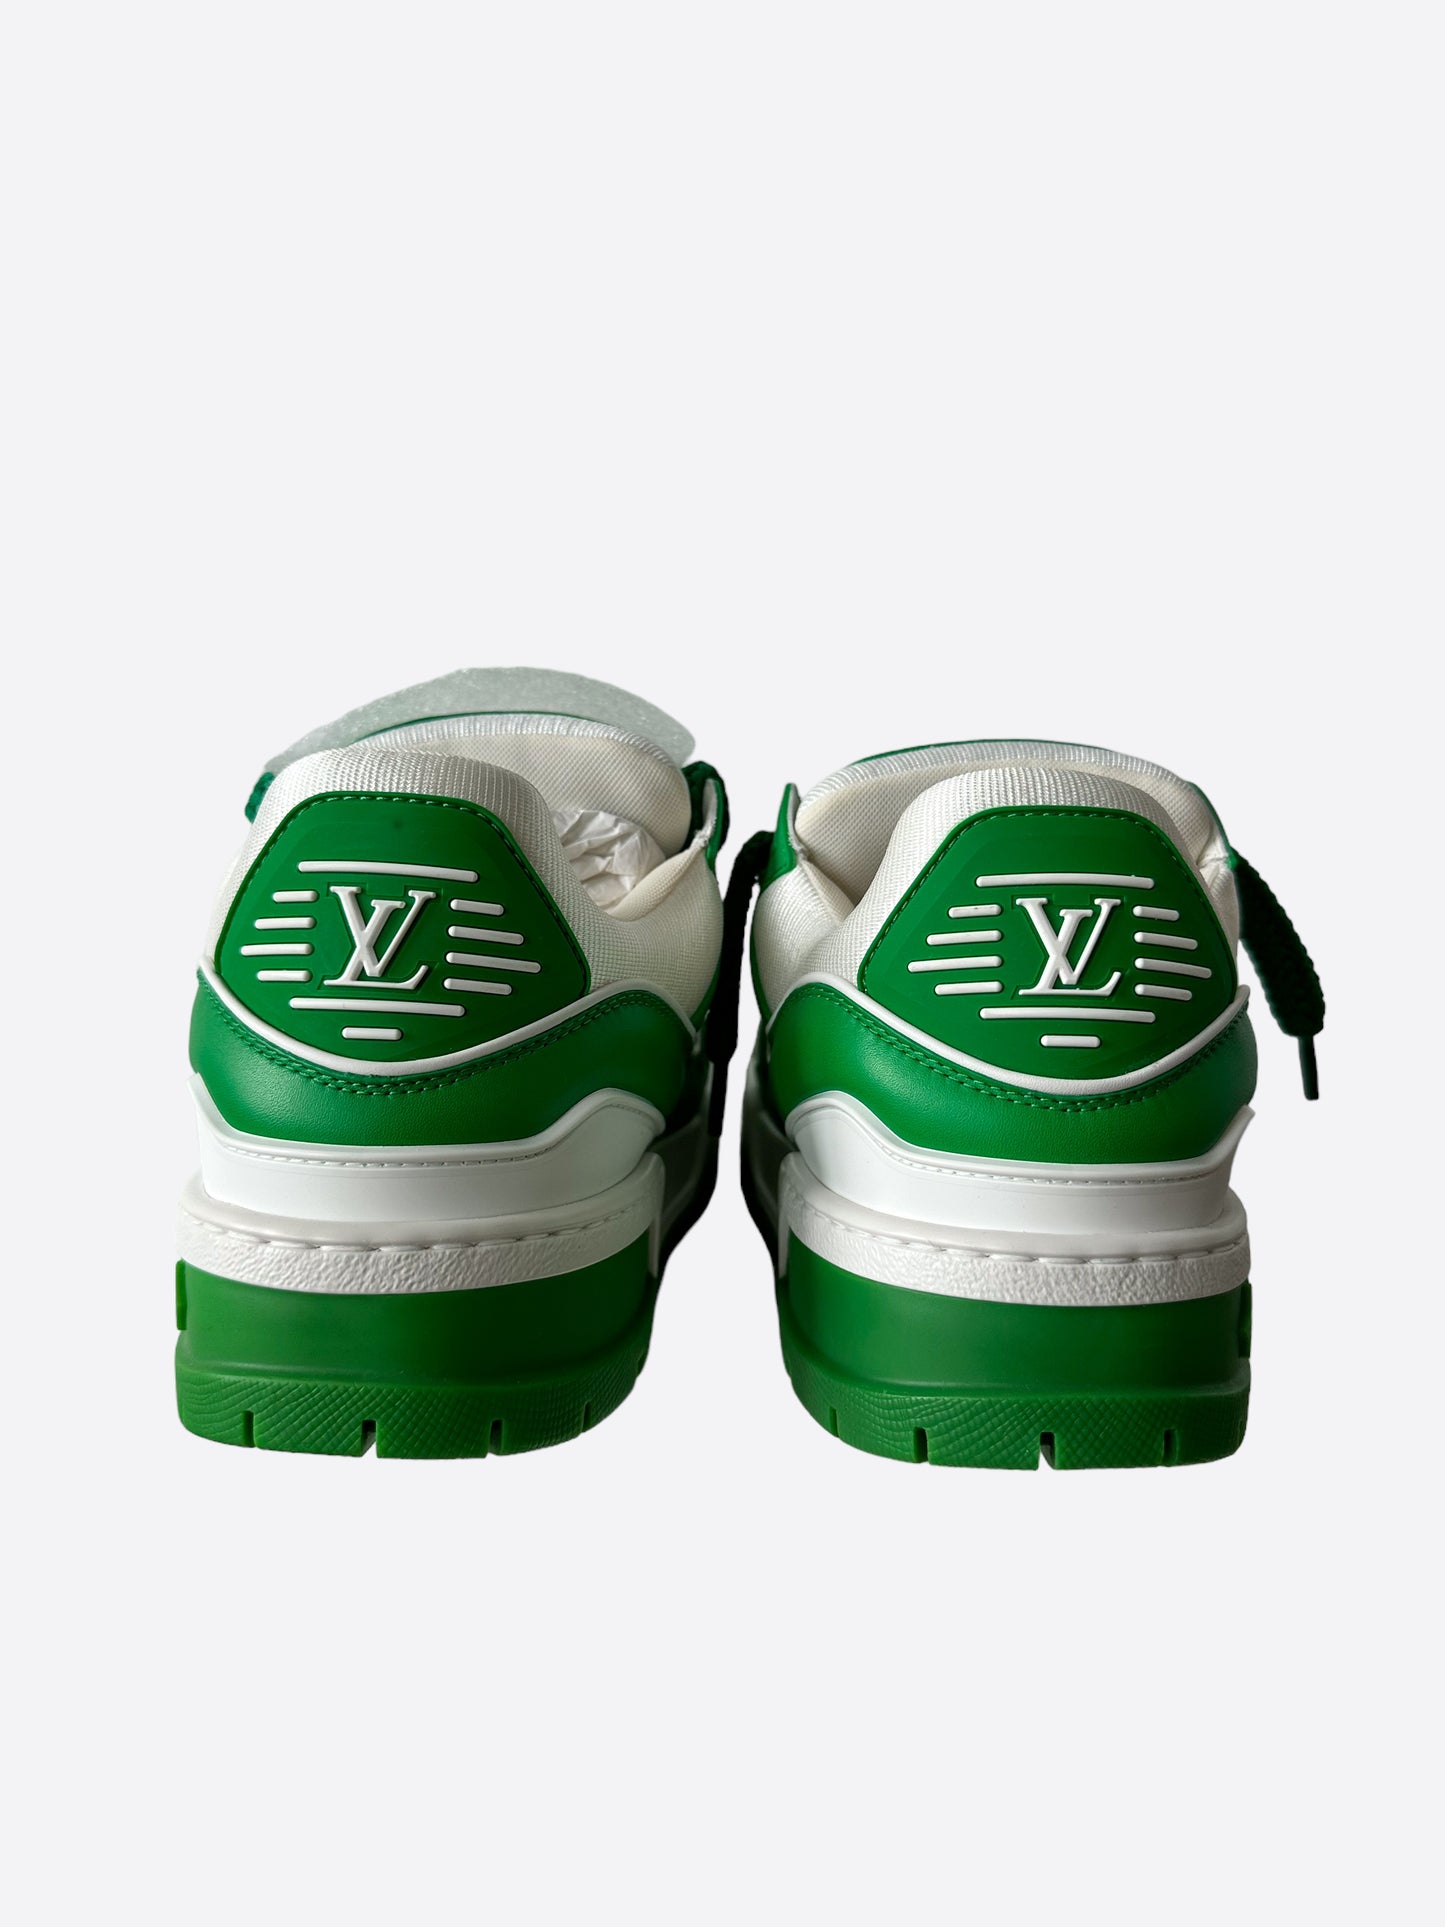 lv monogram green